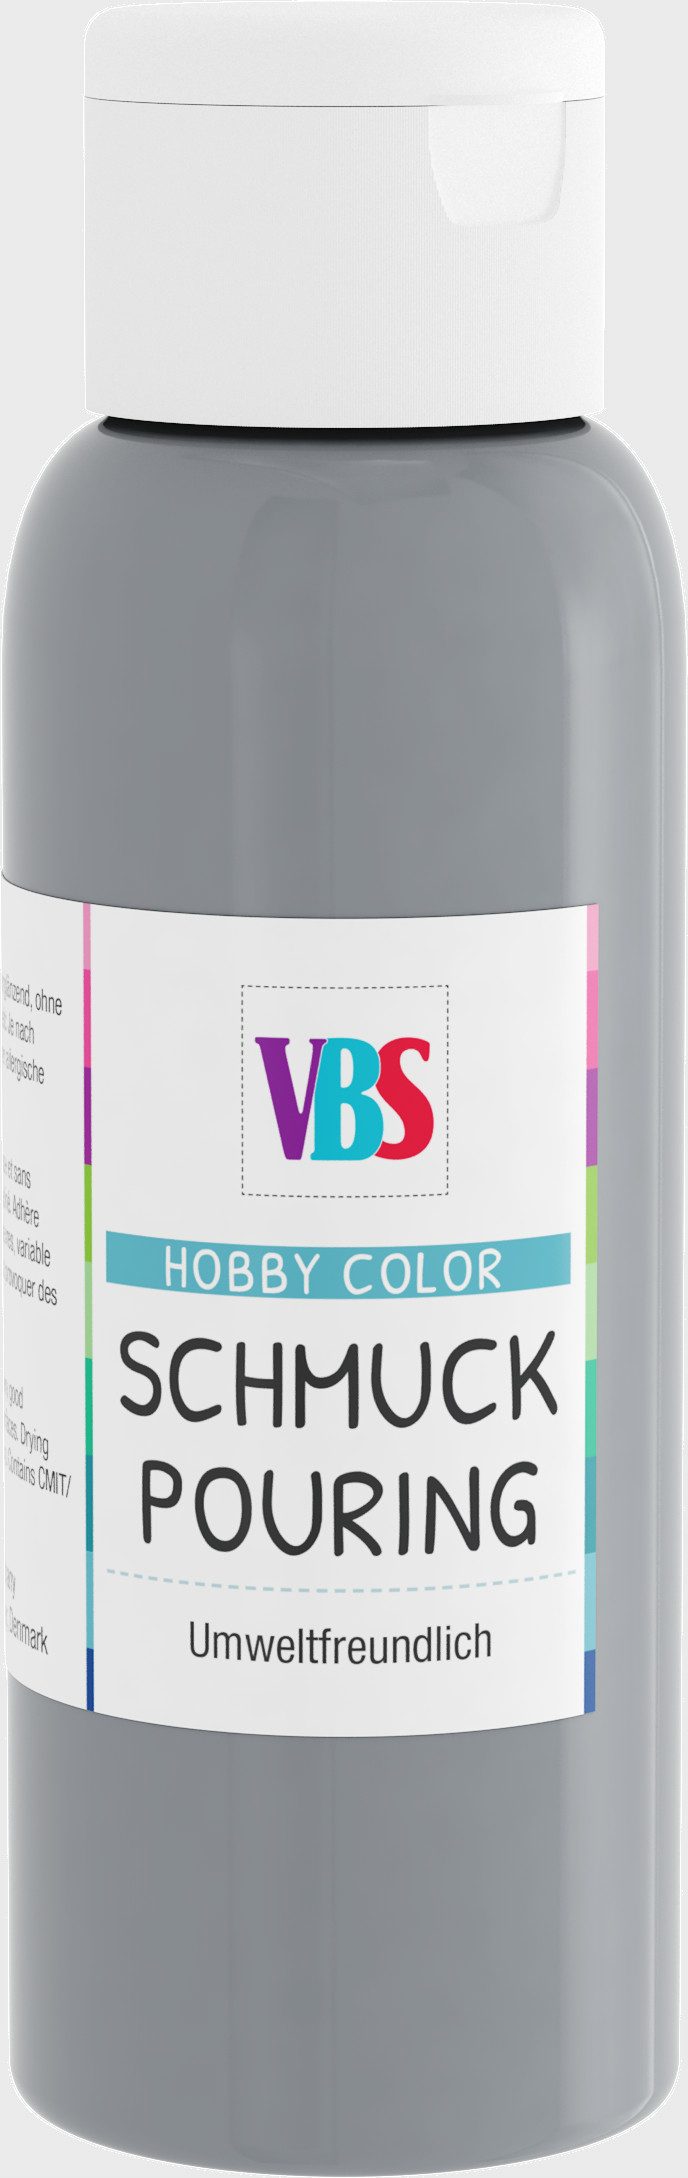 VBS Bastelfarbe Schmuckpouring, 100 ml